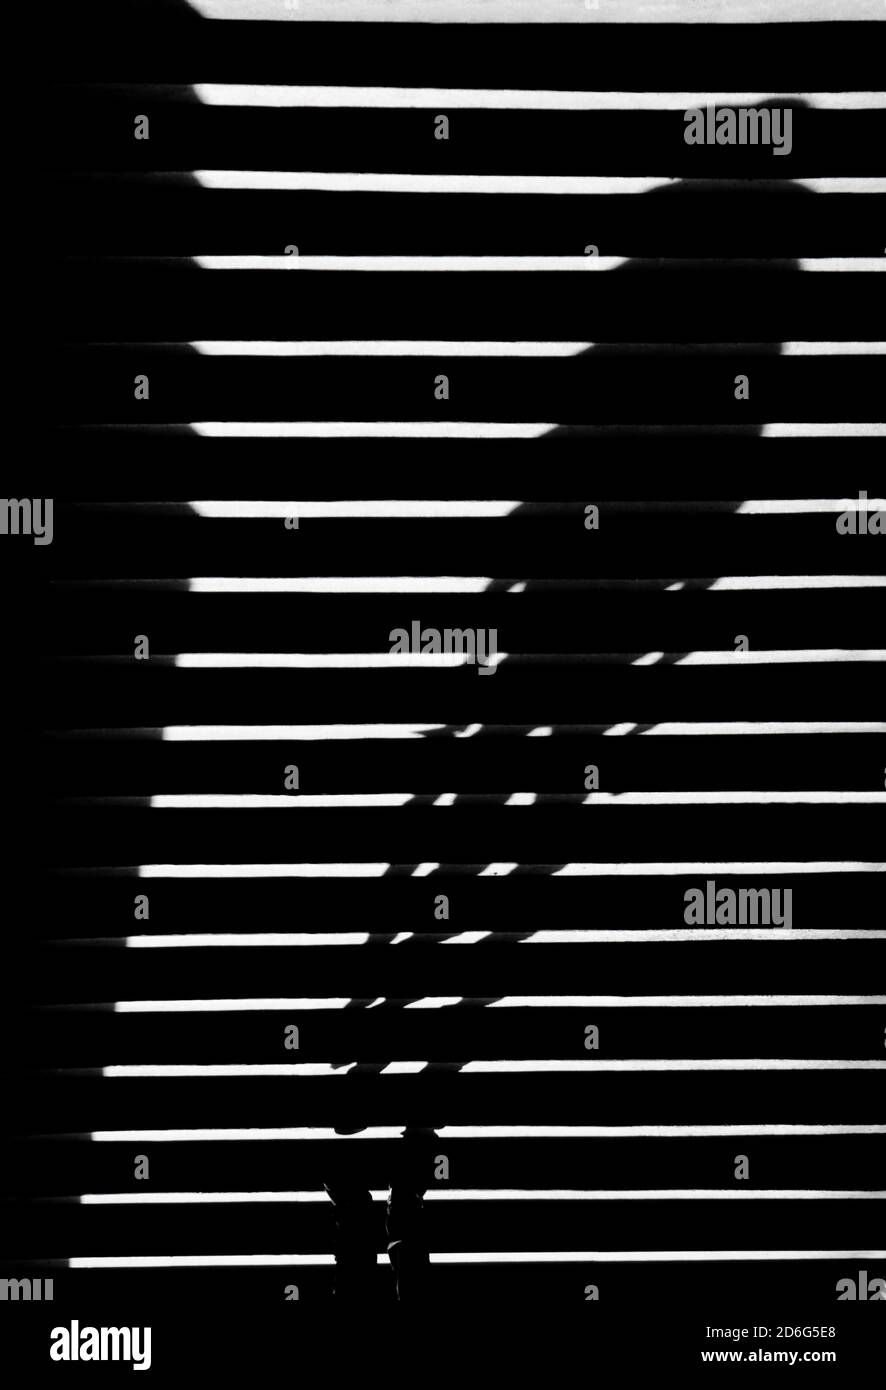 Profilo astratto e sfocato di una persona sulle scale all'aperto, in bianco e nero ad alto contrasto Foto Stock